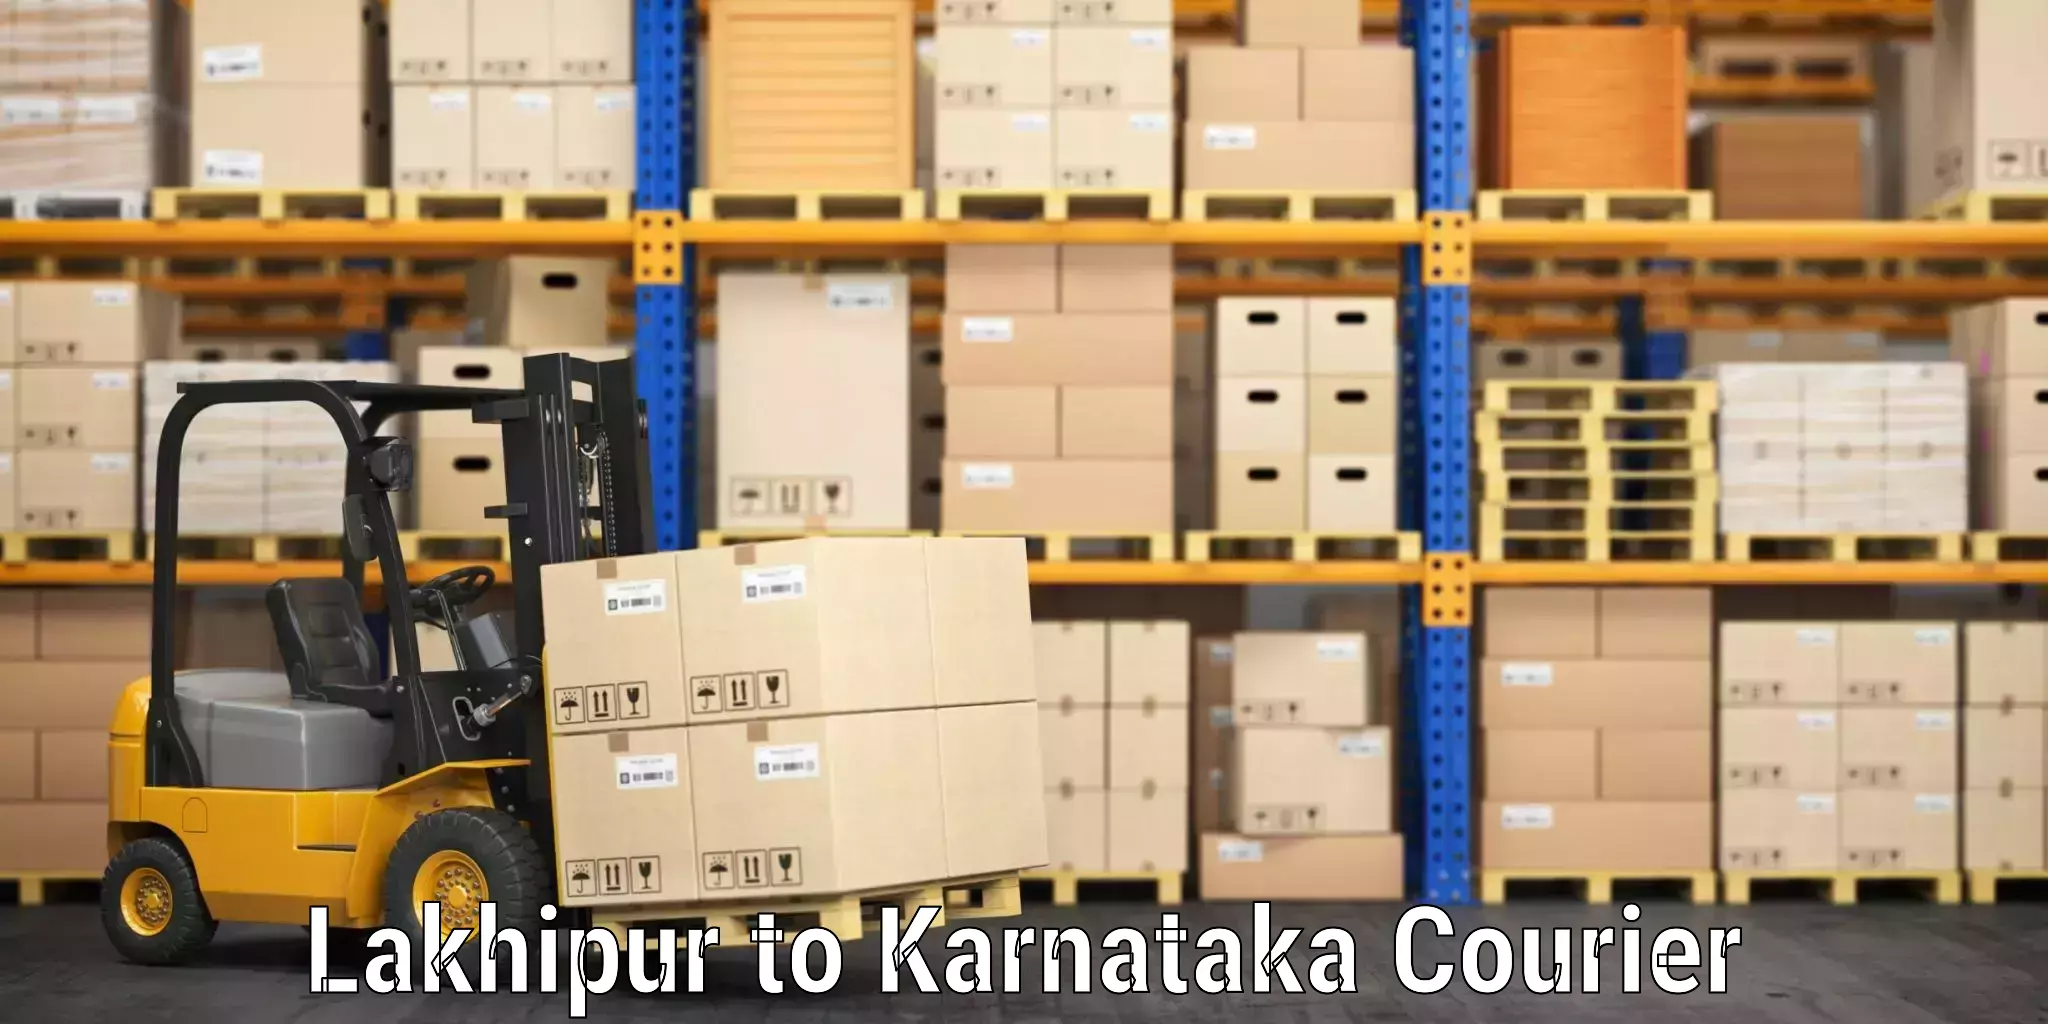 Luggage shipping strategy Lakhipur to Mysore University